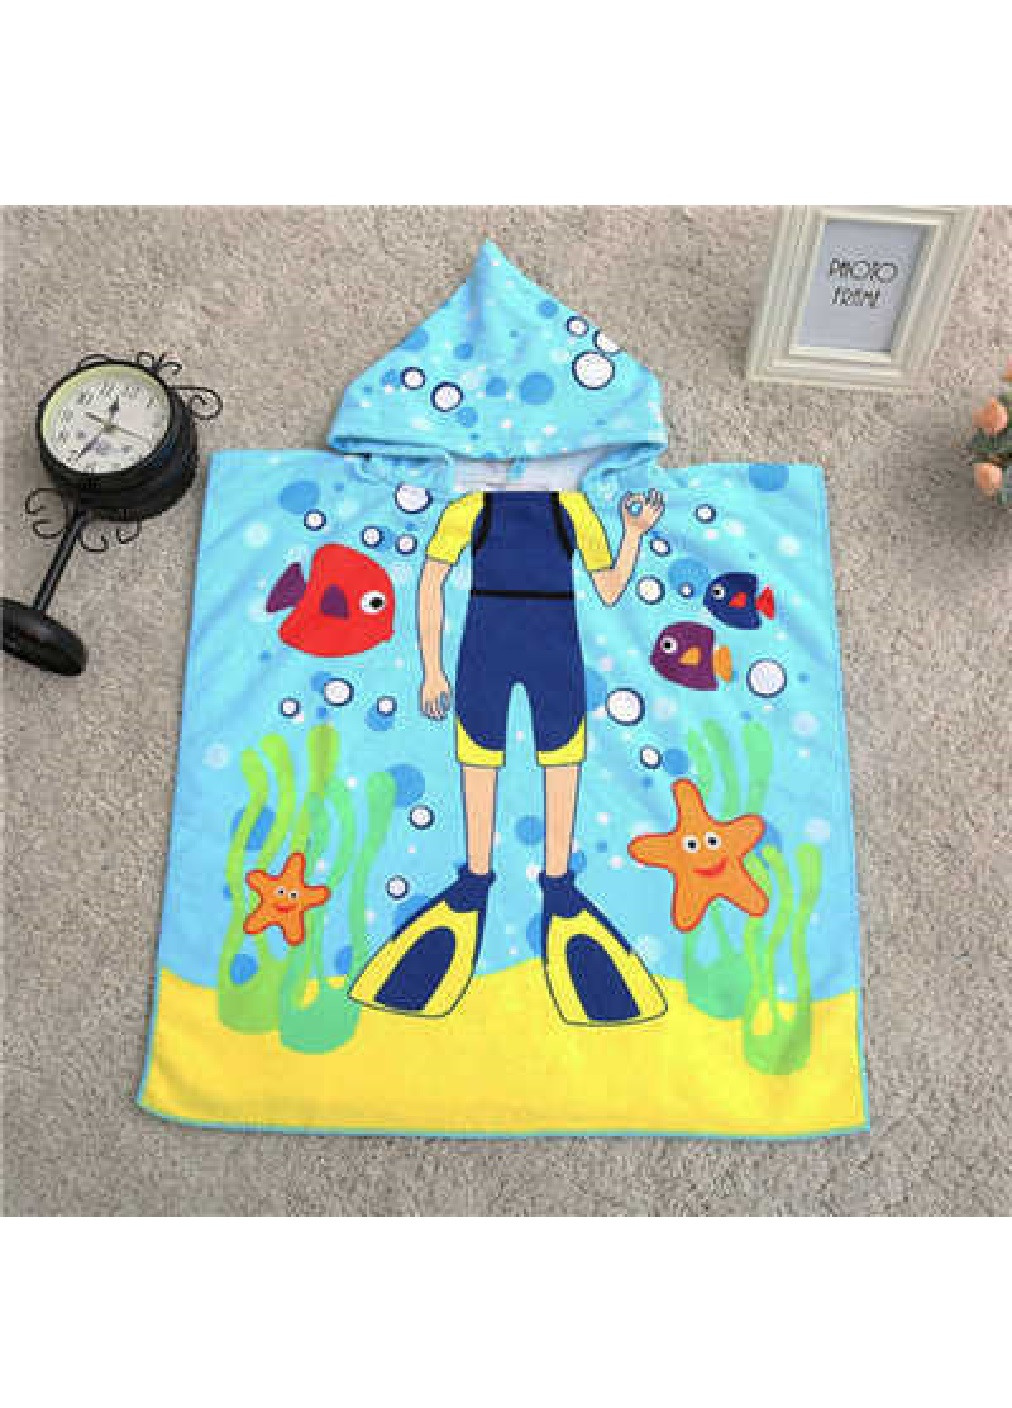 Unbranded дитячий пляжний рушник пончо з капюшоном мікрофібра для ванної басейну пляжу 60х60 см (474688-prob) плавець малюнок блакитний виробництво -